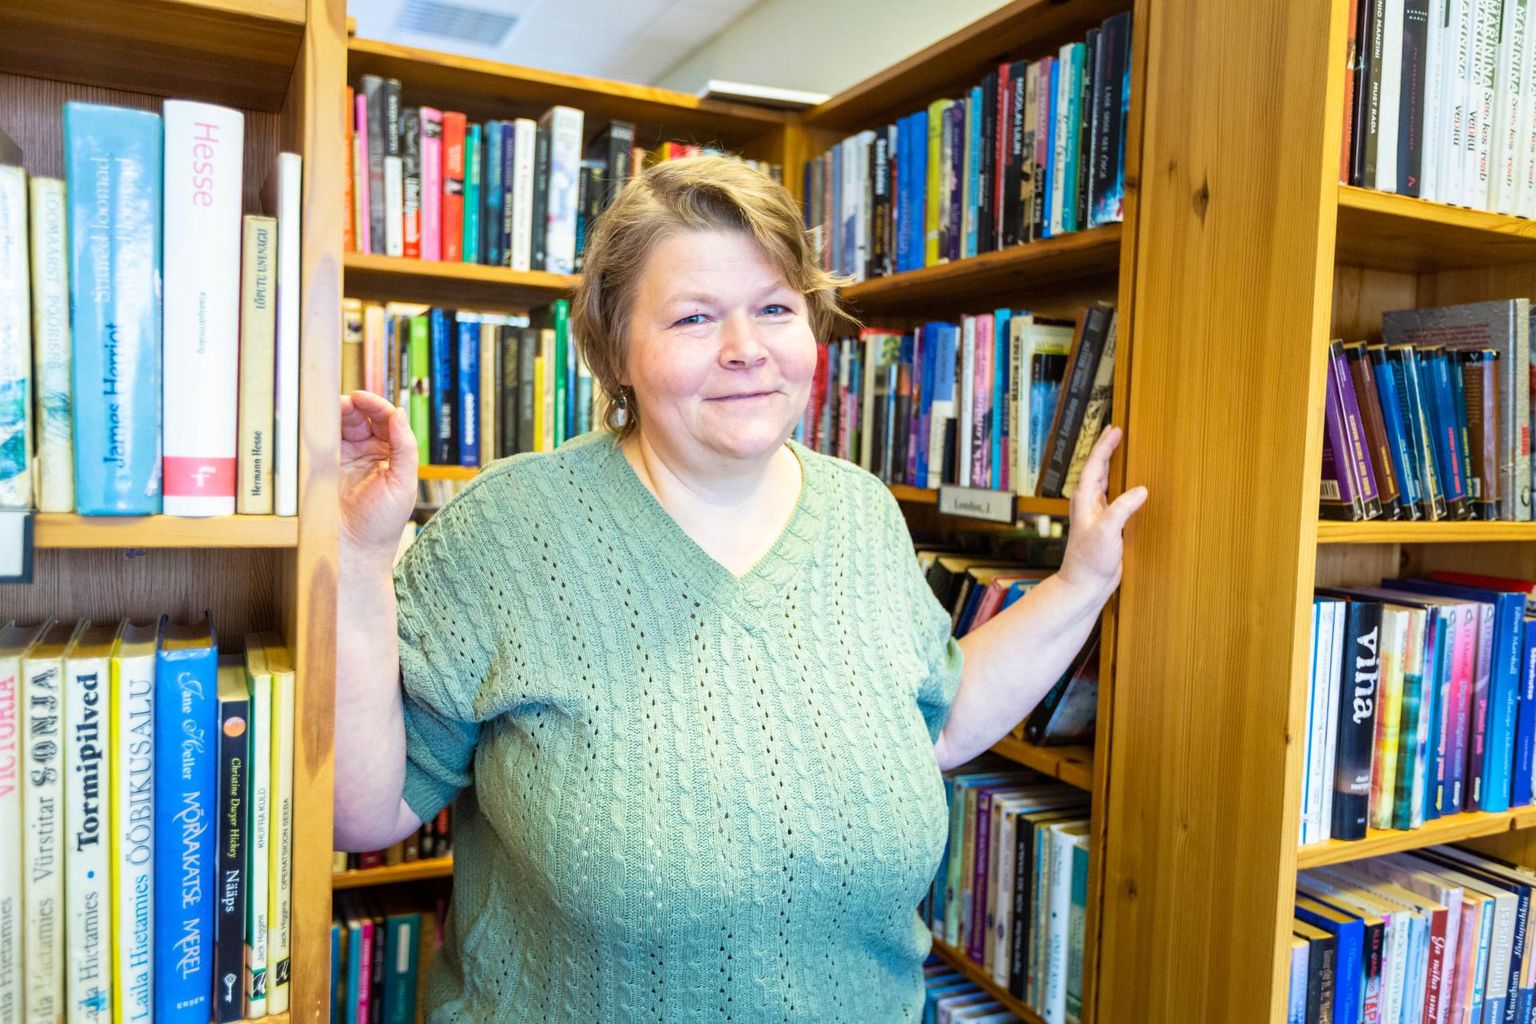 Peri haruraamatukogus, kus Margit Õkva töötab, on ligemale 13 000 köidet. Iga päev tuleb juurde üks raamat.